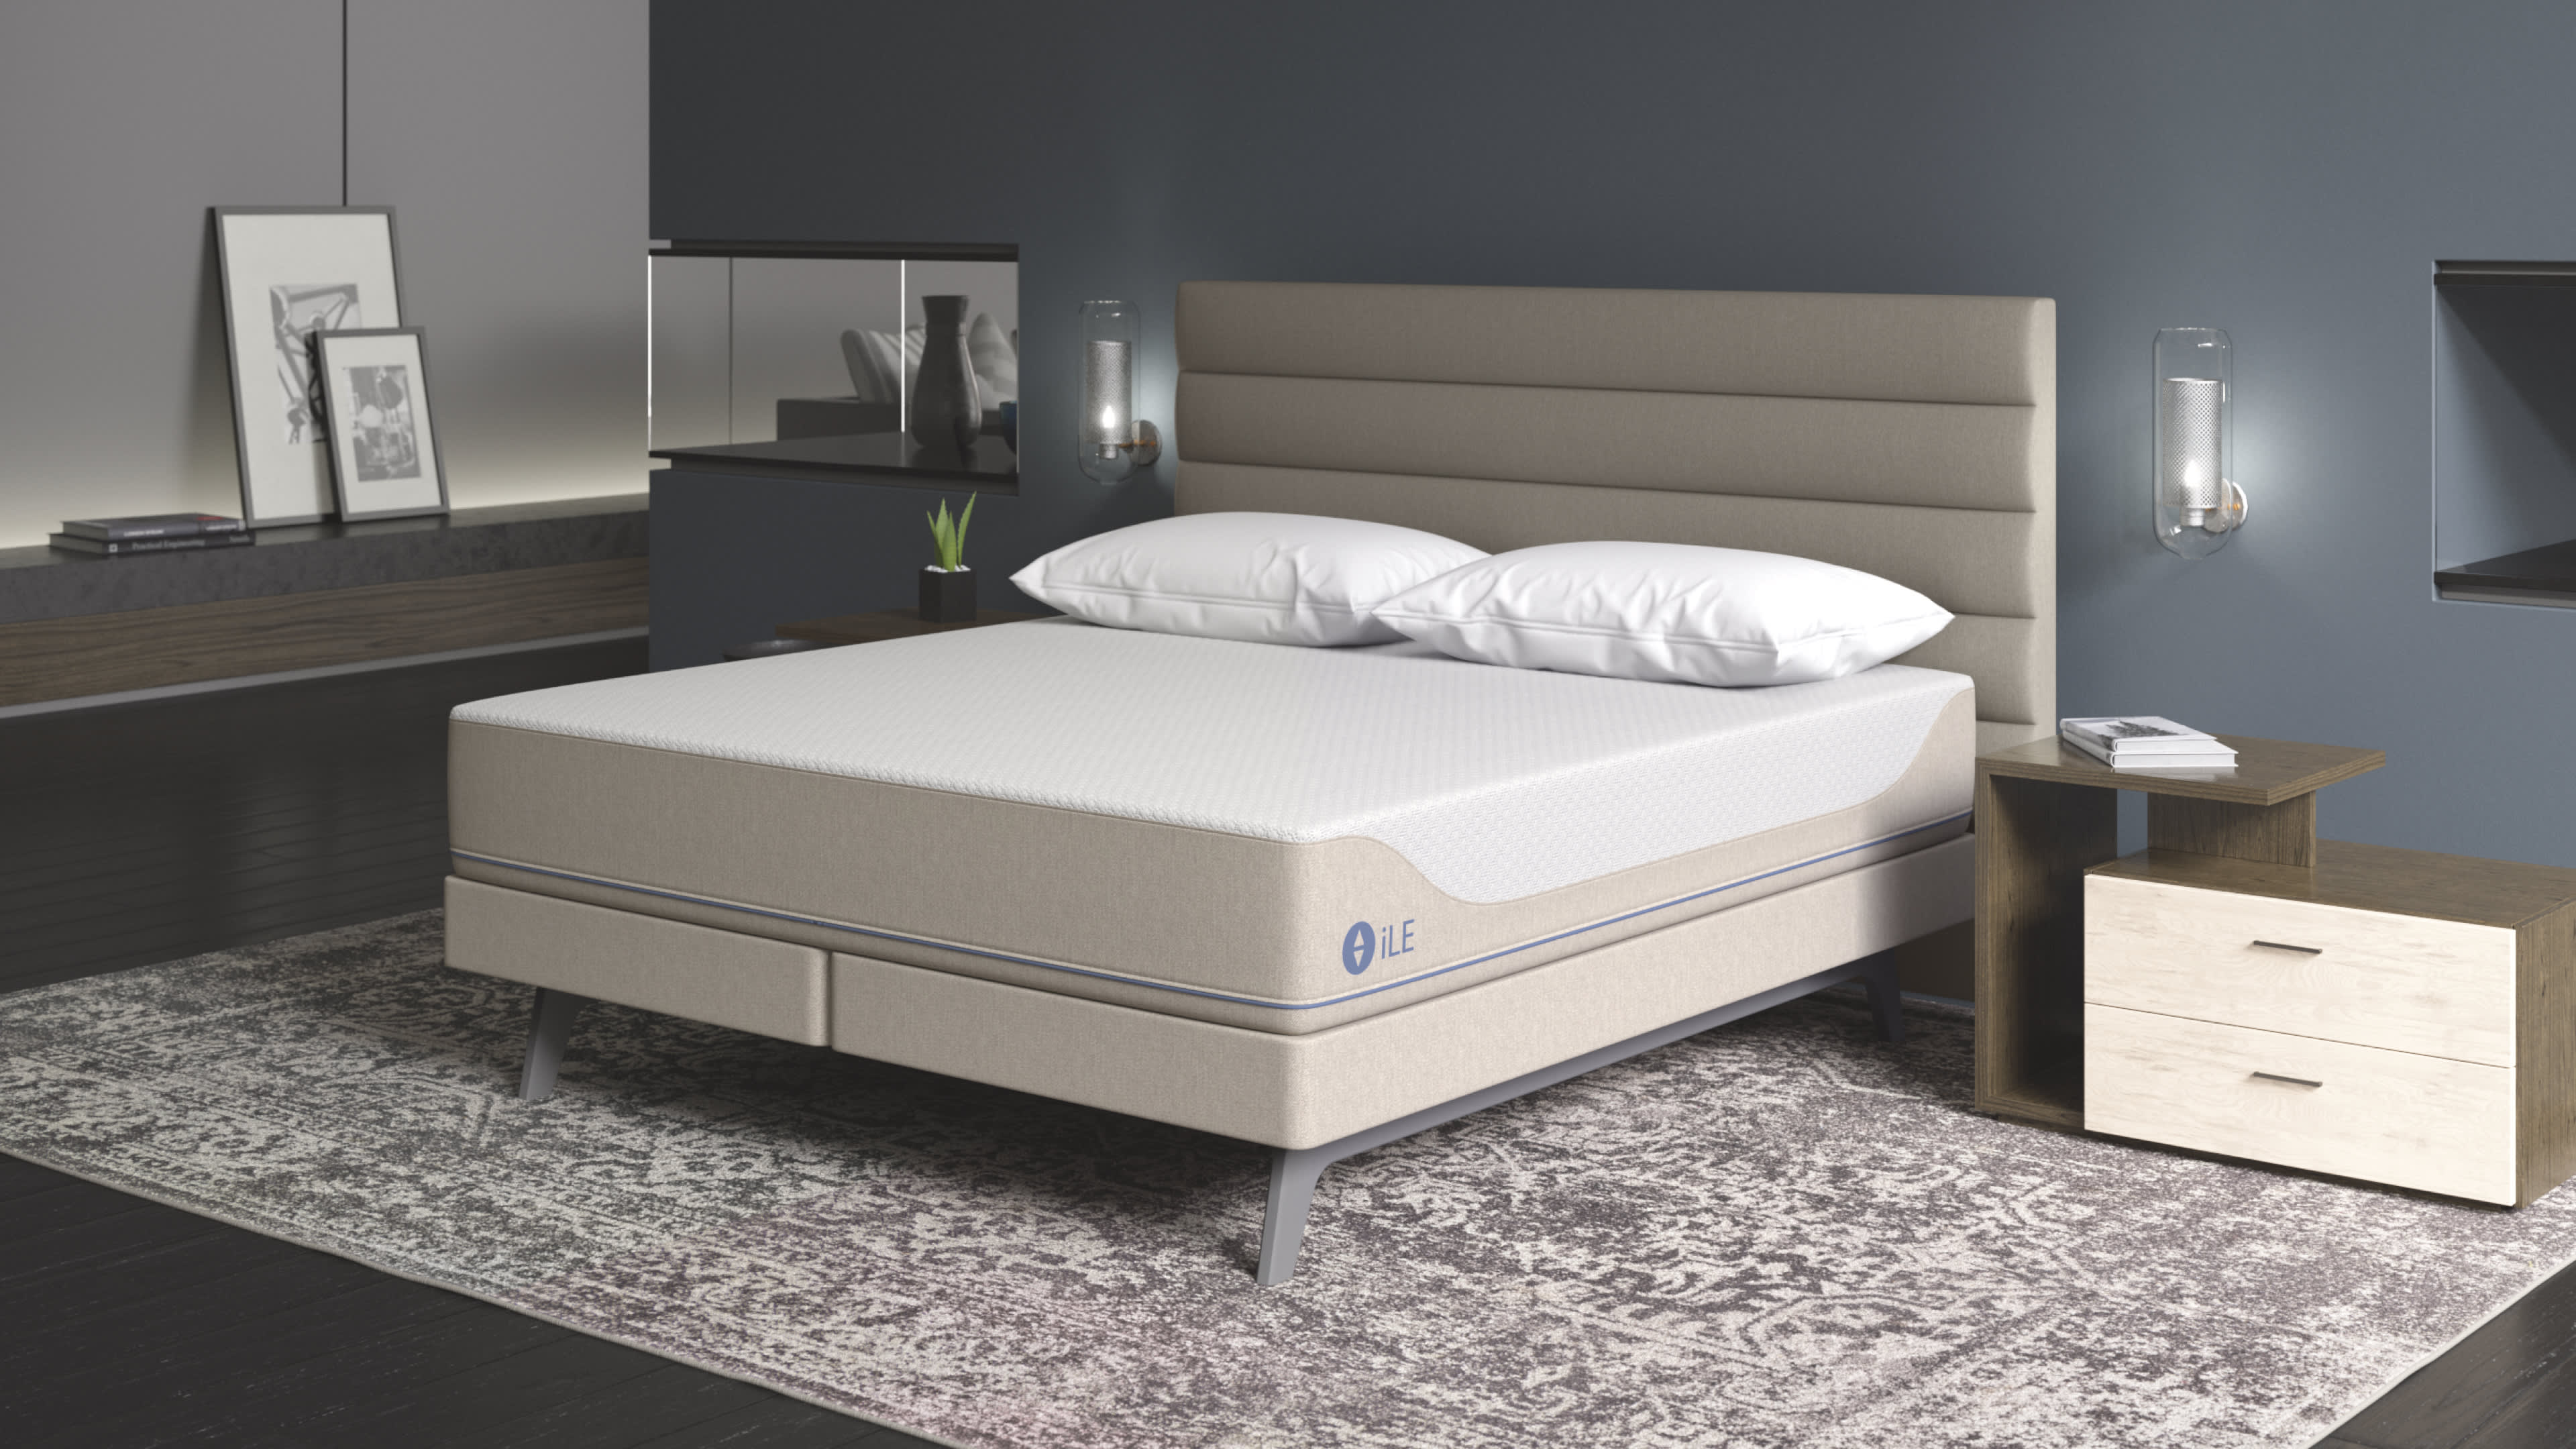 ile sleep number mattress set